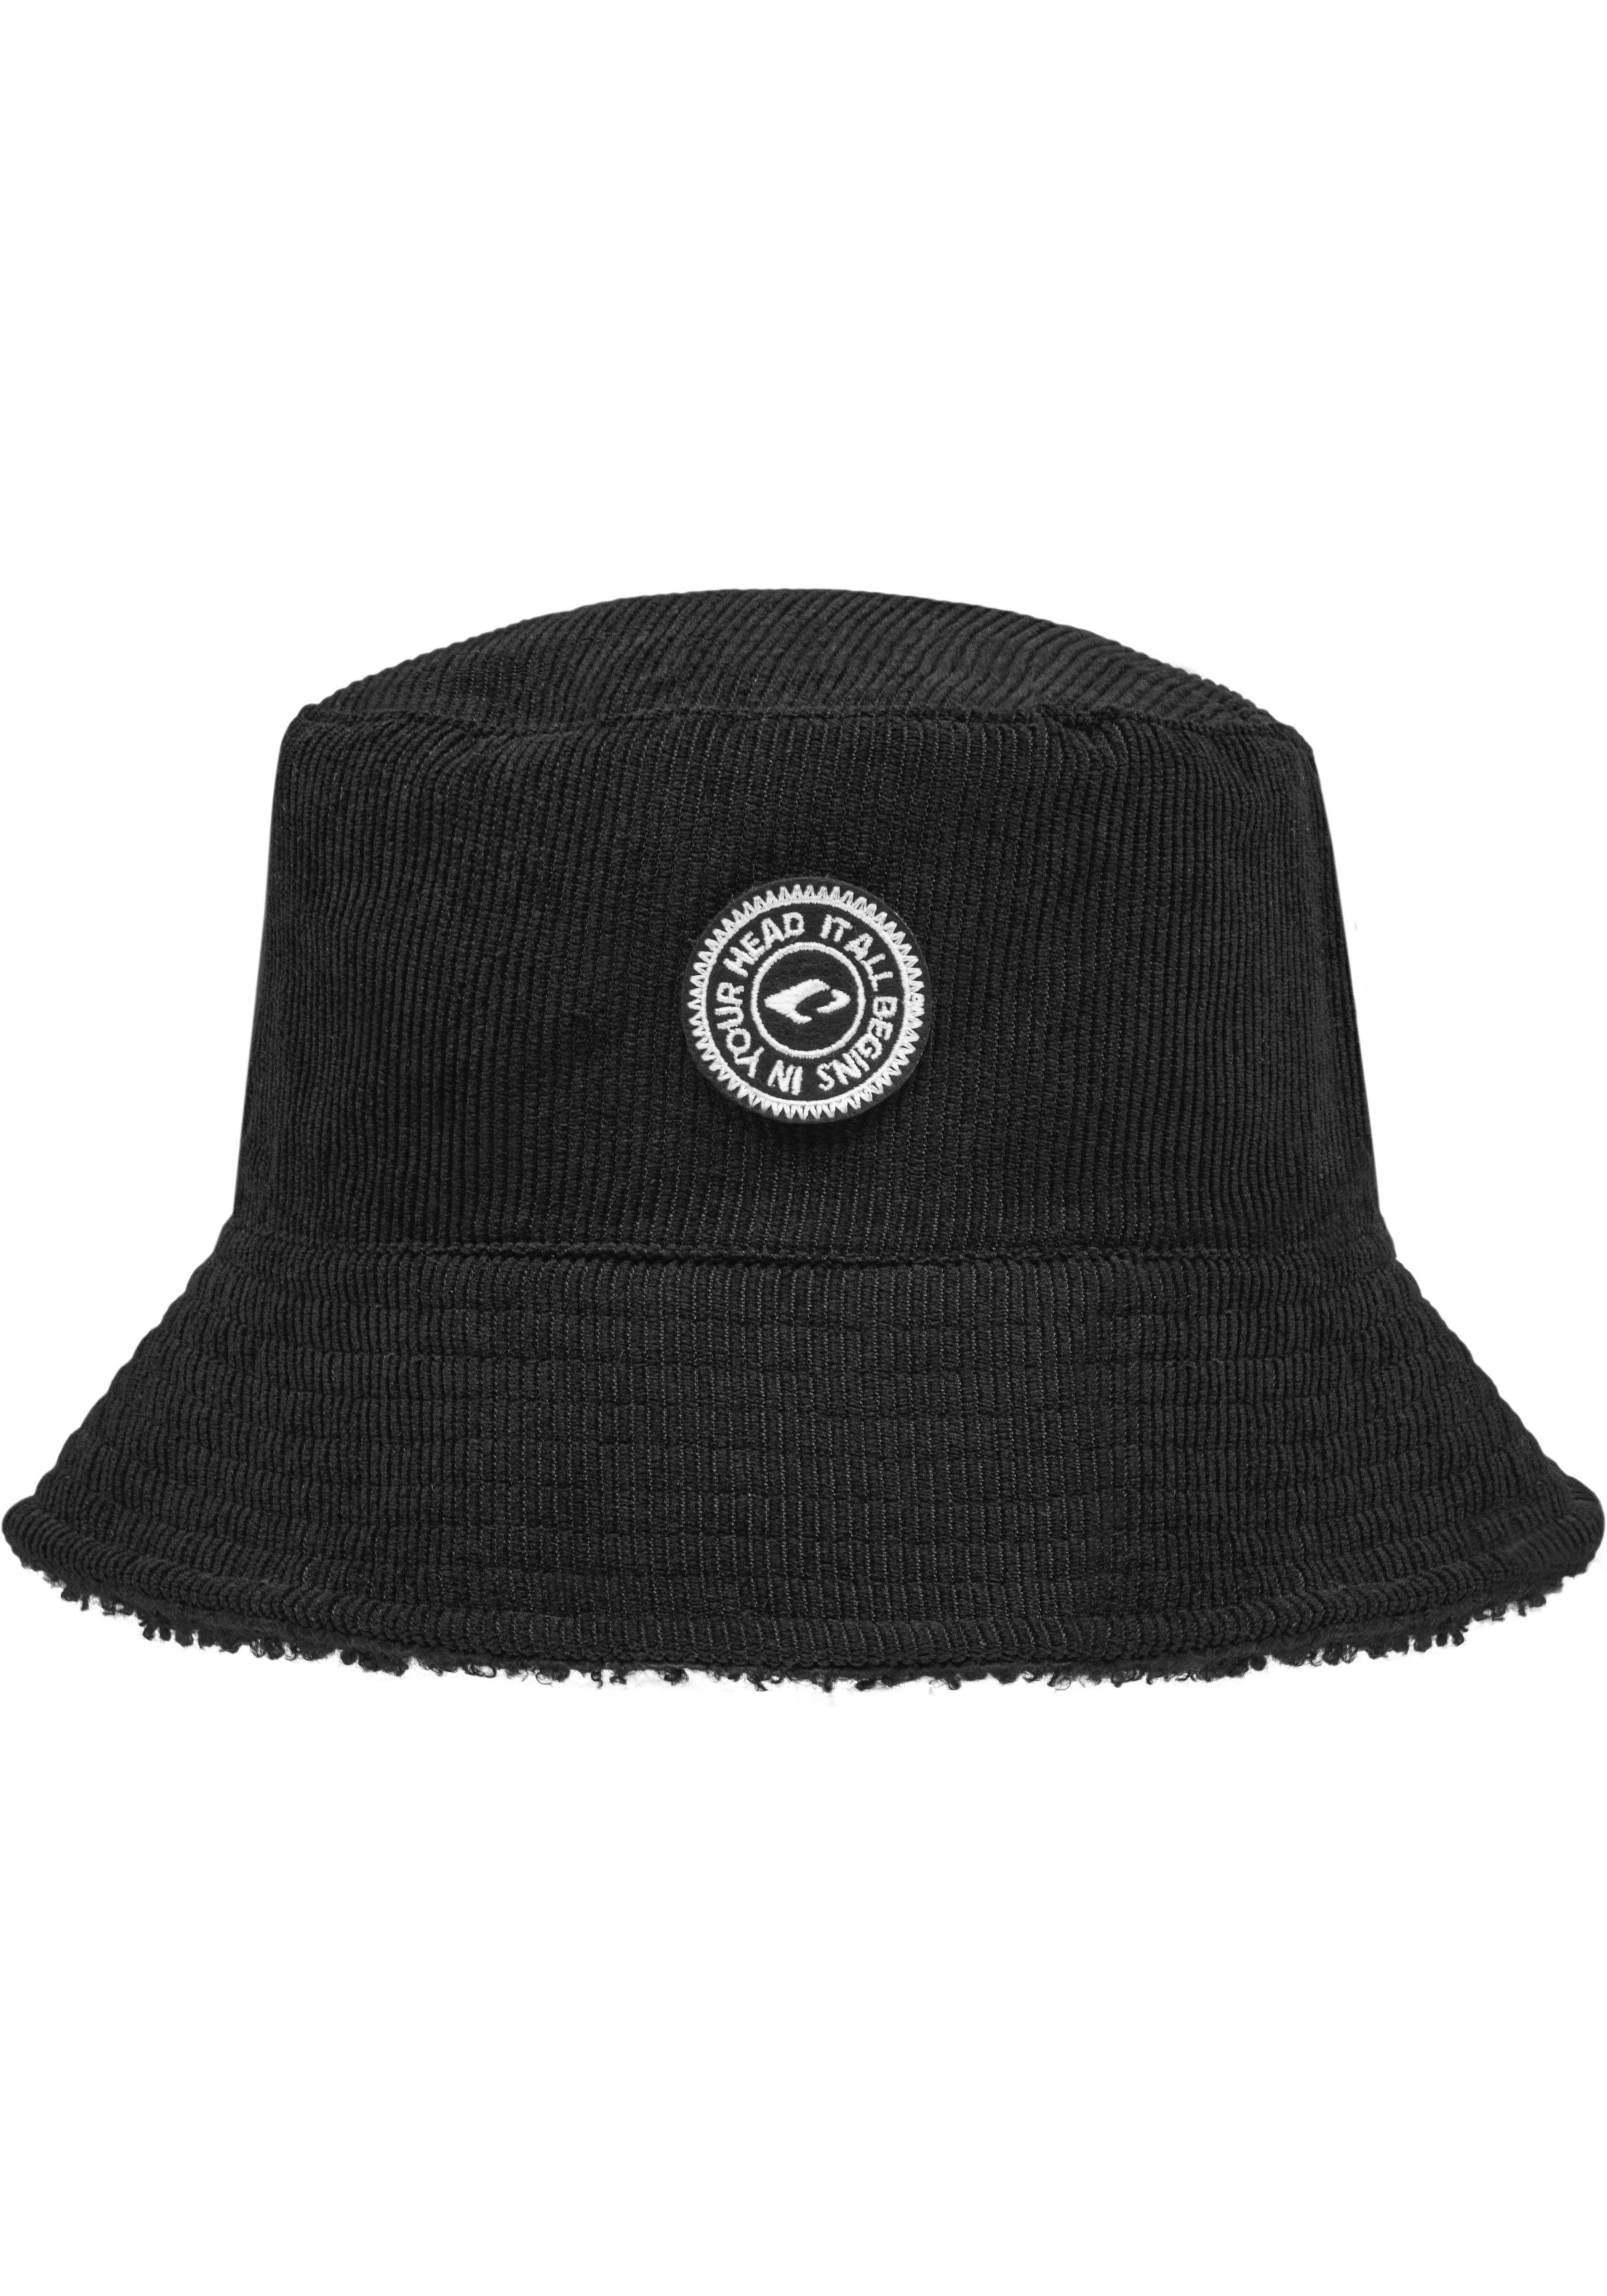 chillouts Fischerhut Selma black tragbar beidseitig Wendehut Hat